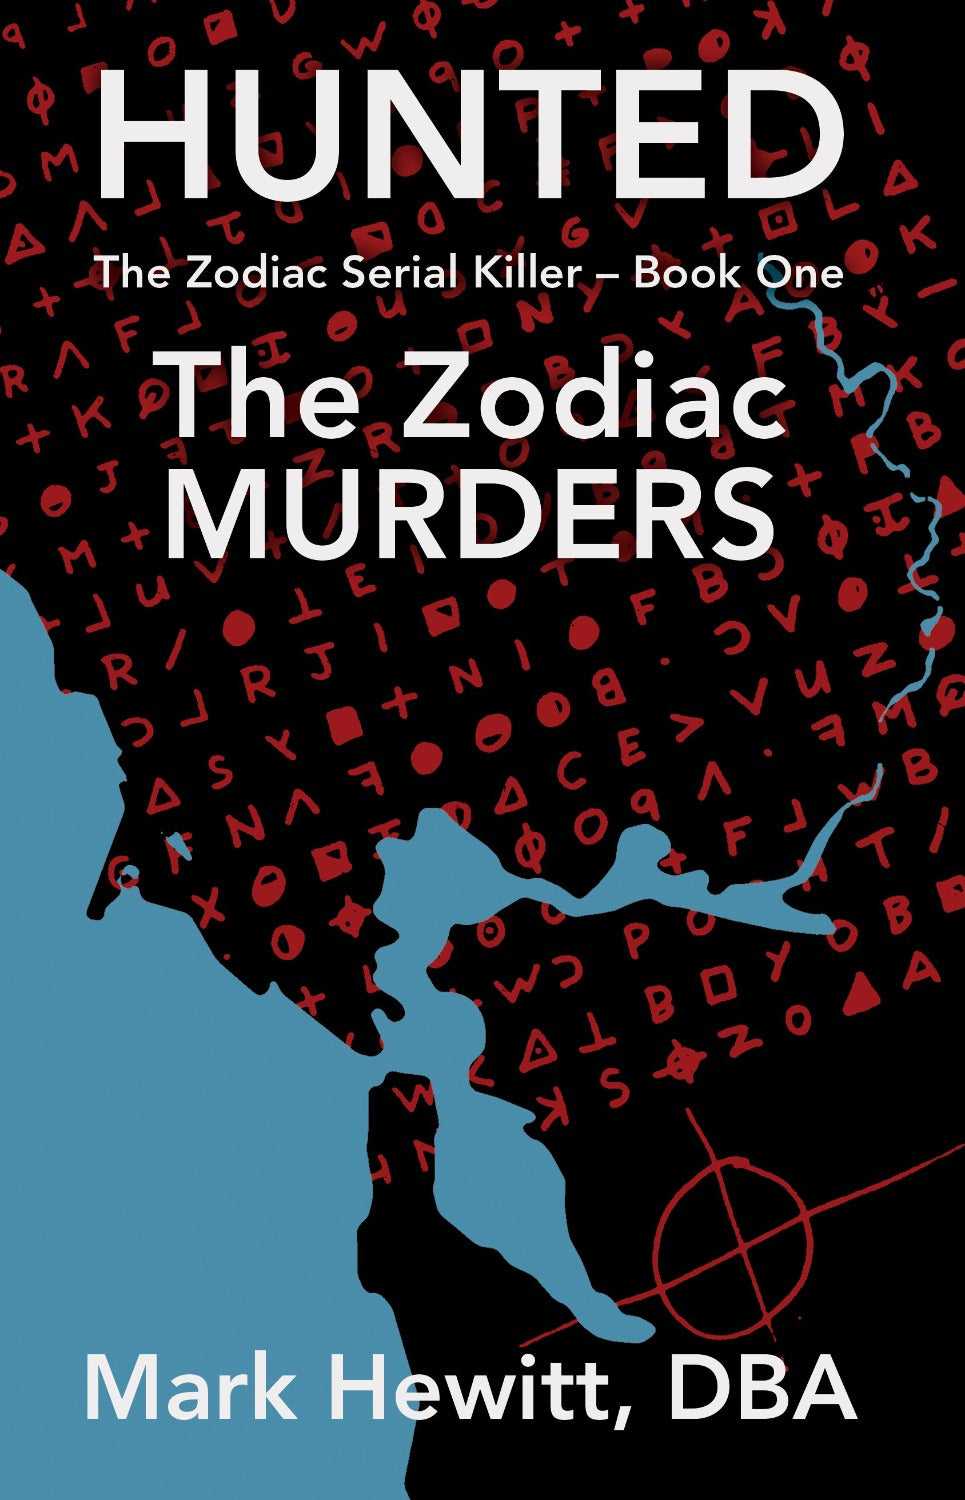 Hunted: The Zodiac Murders